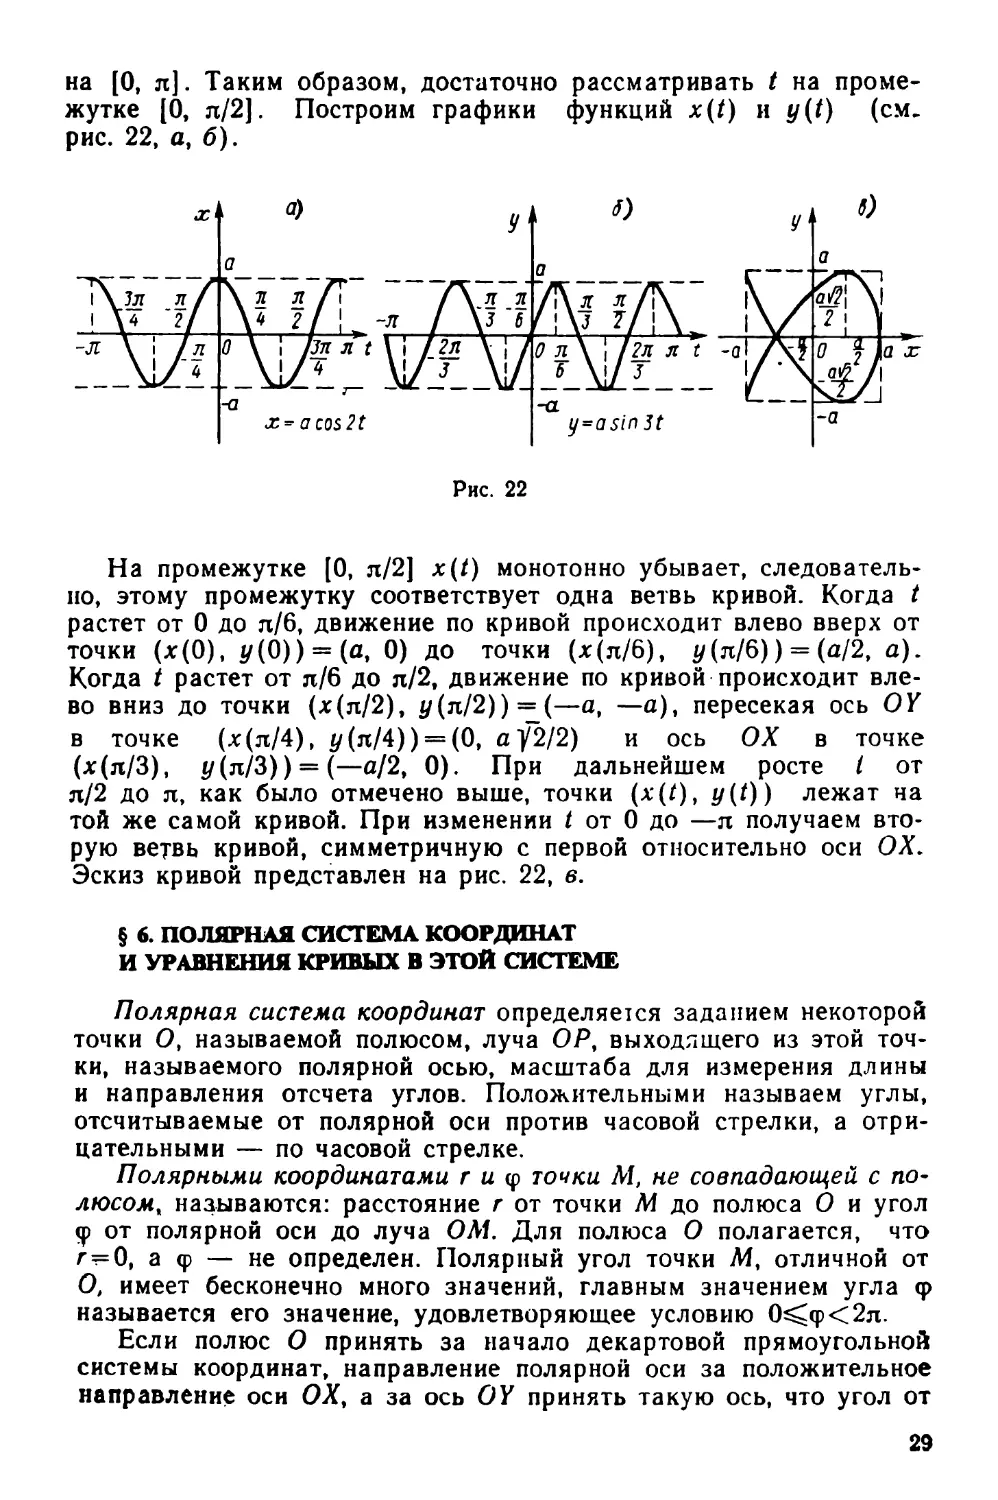 § 6. Полярная система координат и уравнения кривых в этой системе